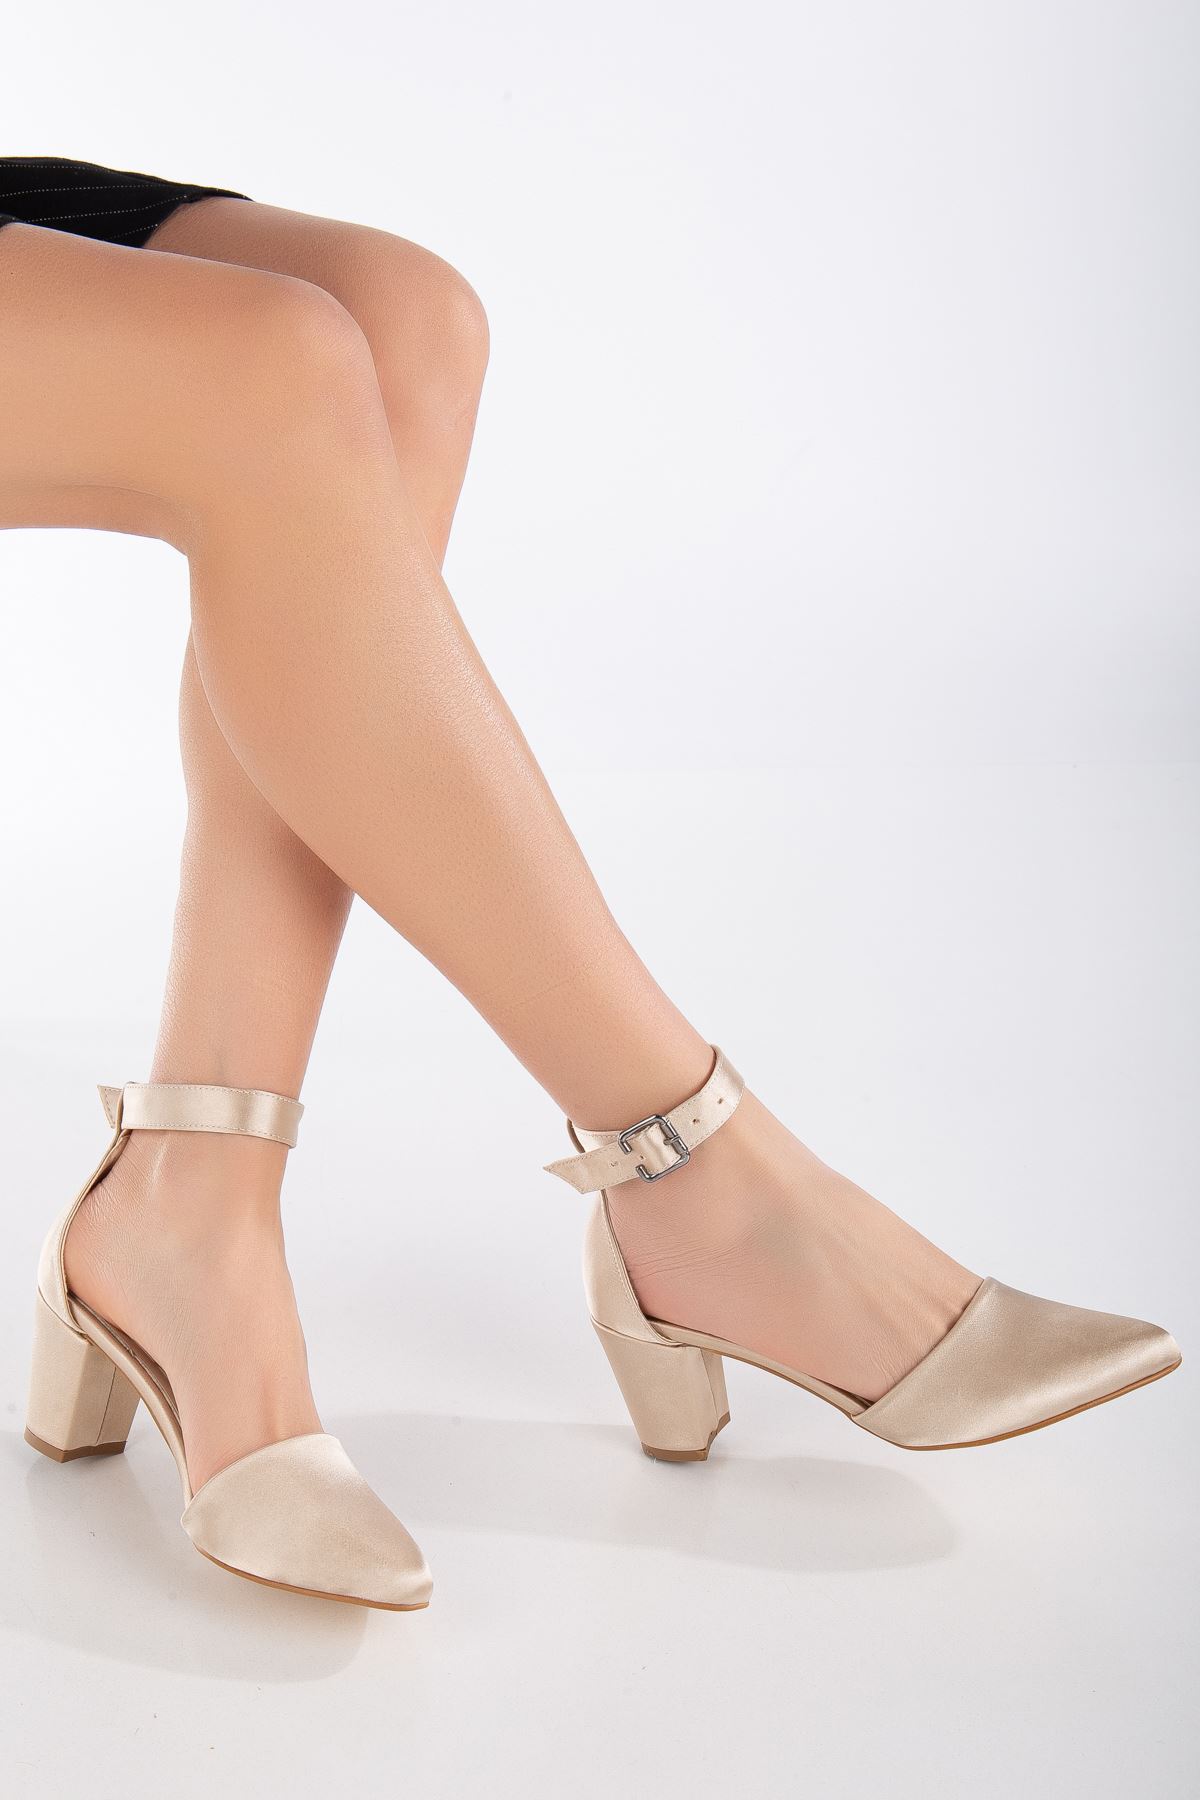 Lottis Krem Saten Detaylı Topuklu Kadın Ayakkabı 